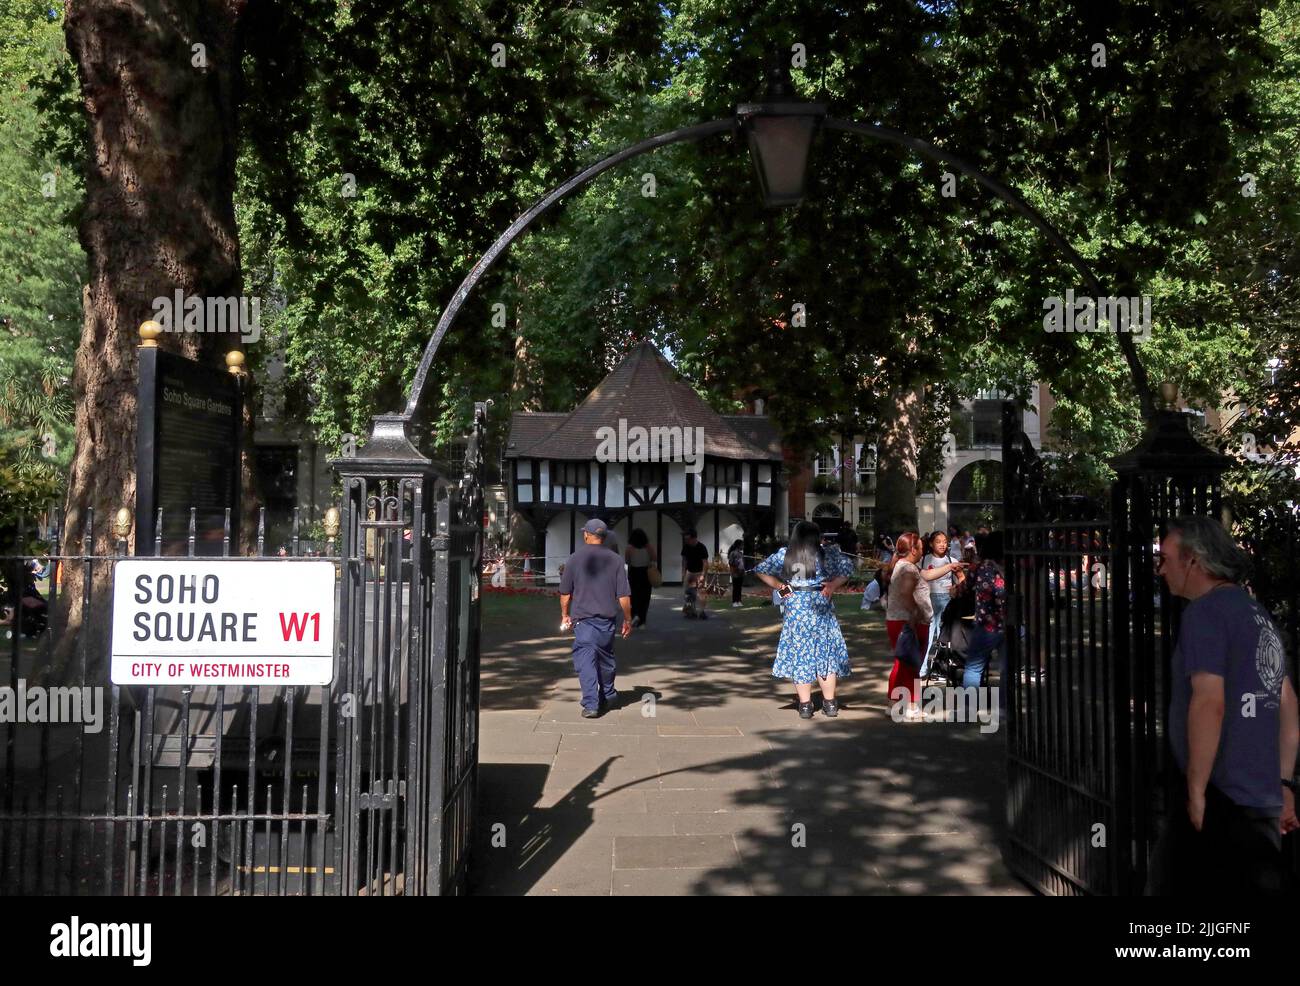 Porta d'ingresso alle folle estive nel parco di Soho Square, Soho - Entertainment District, Londra, Inghilterra, Regno Unito, W1D 3QN Foto Stock